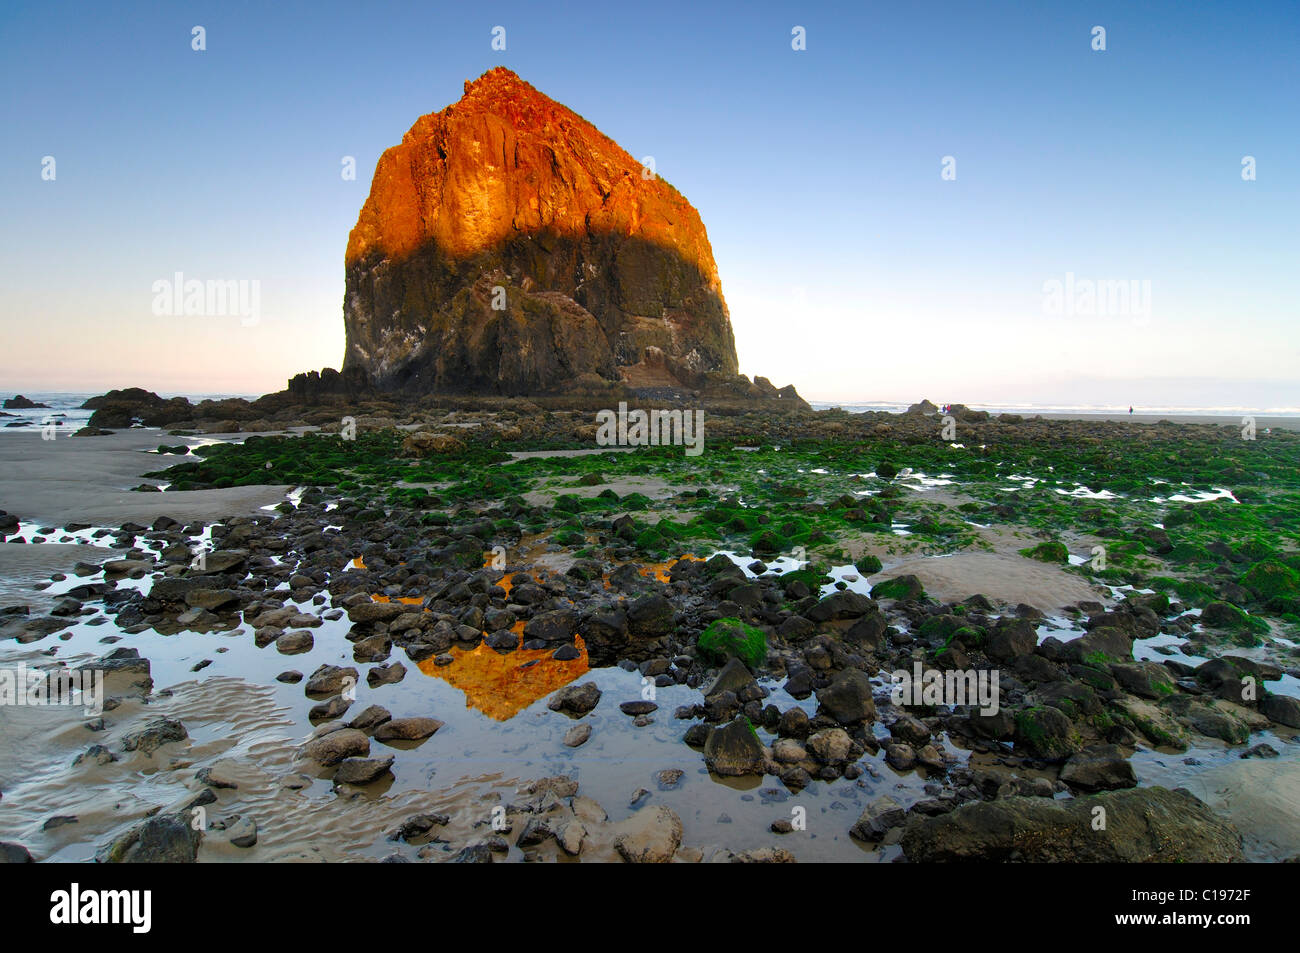 Famoso 'Haystack Rock' monolito, lava solidificata rock a Cannon Beach, attrazione turistica, Contea di Clatsop, Oregon, Stati Uniti d'America Foto Stock